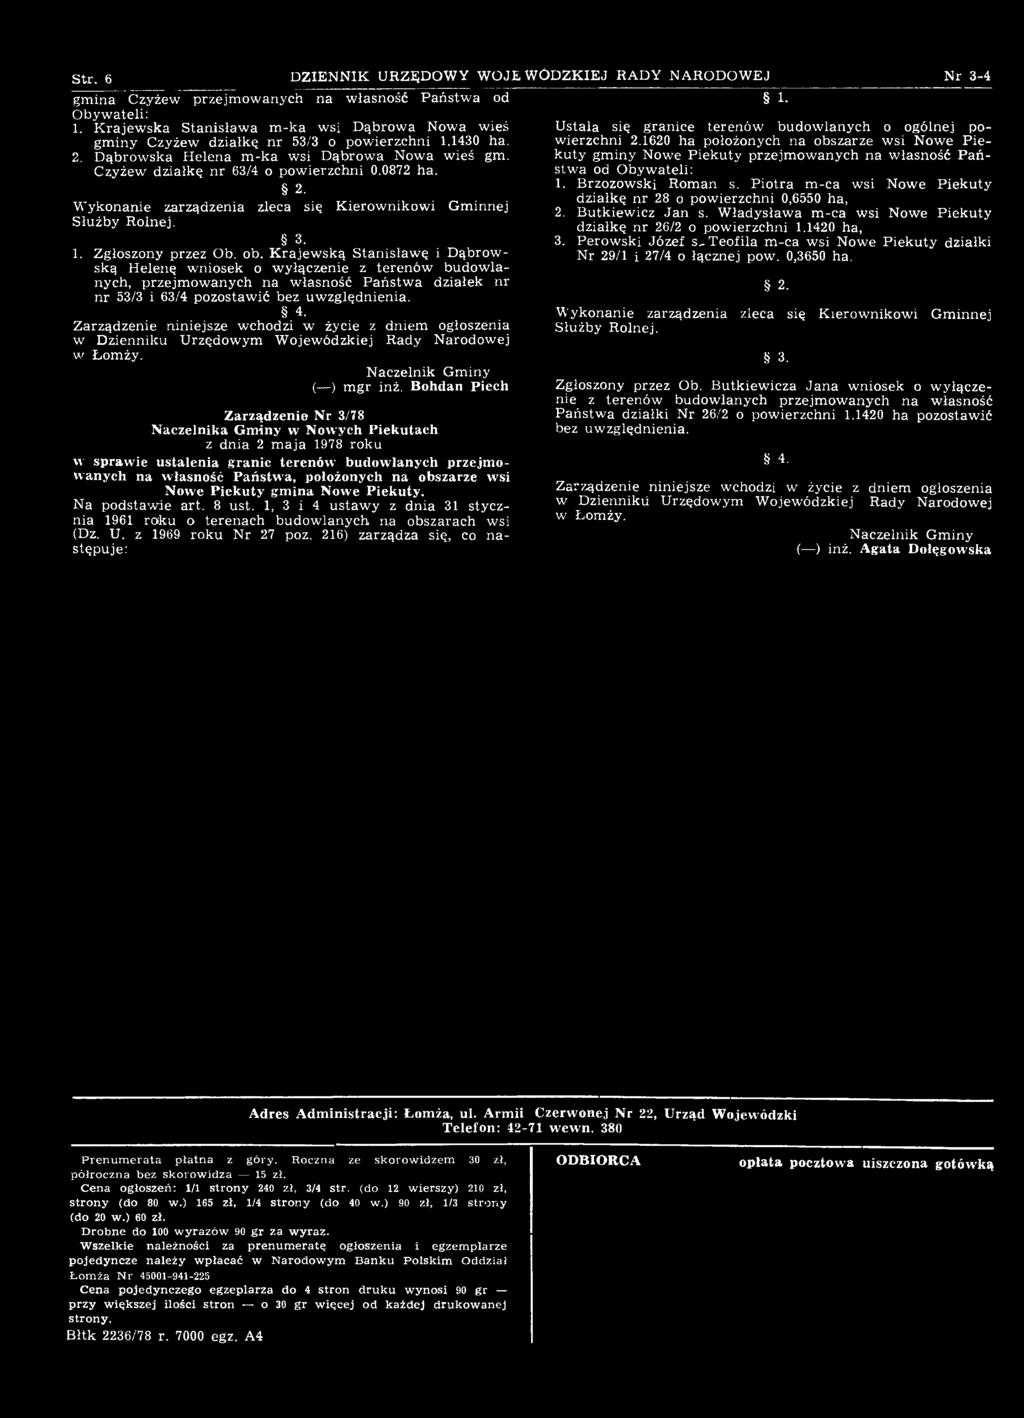 Bohdan Piech Zarządzenie Nr 3/78 Naczelnika Gminy w Nowych Piekutach z dnia 2 m aja 1978 roku w sprawie ustalenia granic terenów budowlanych przejmowanych na własność Państwa, położonych na obszarze